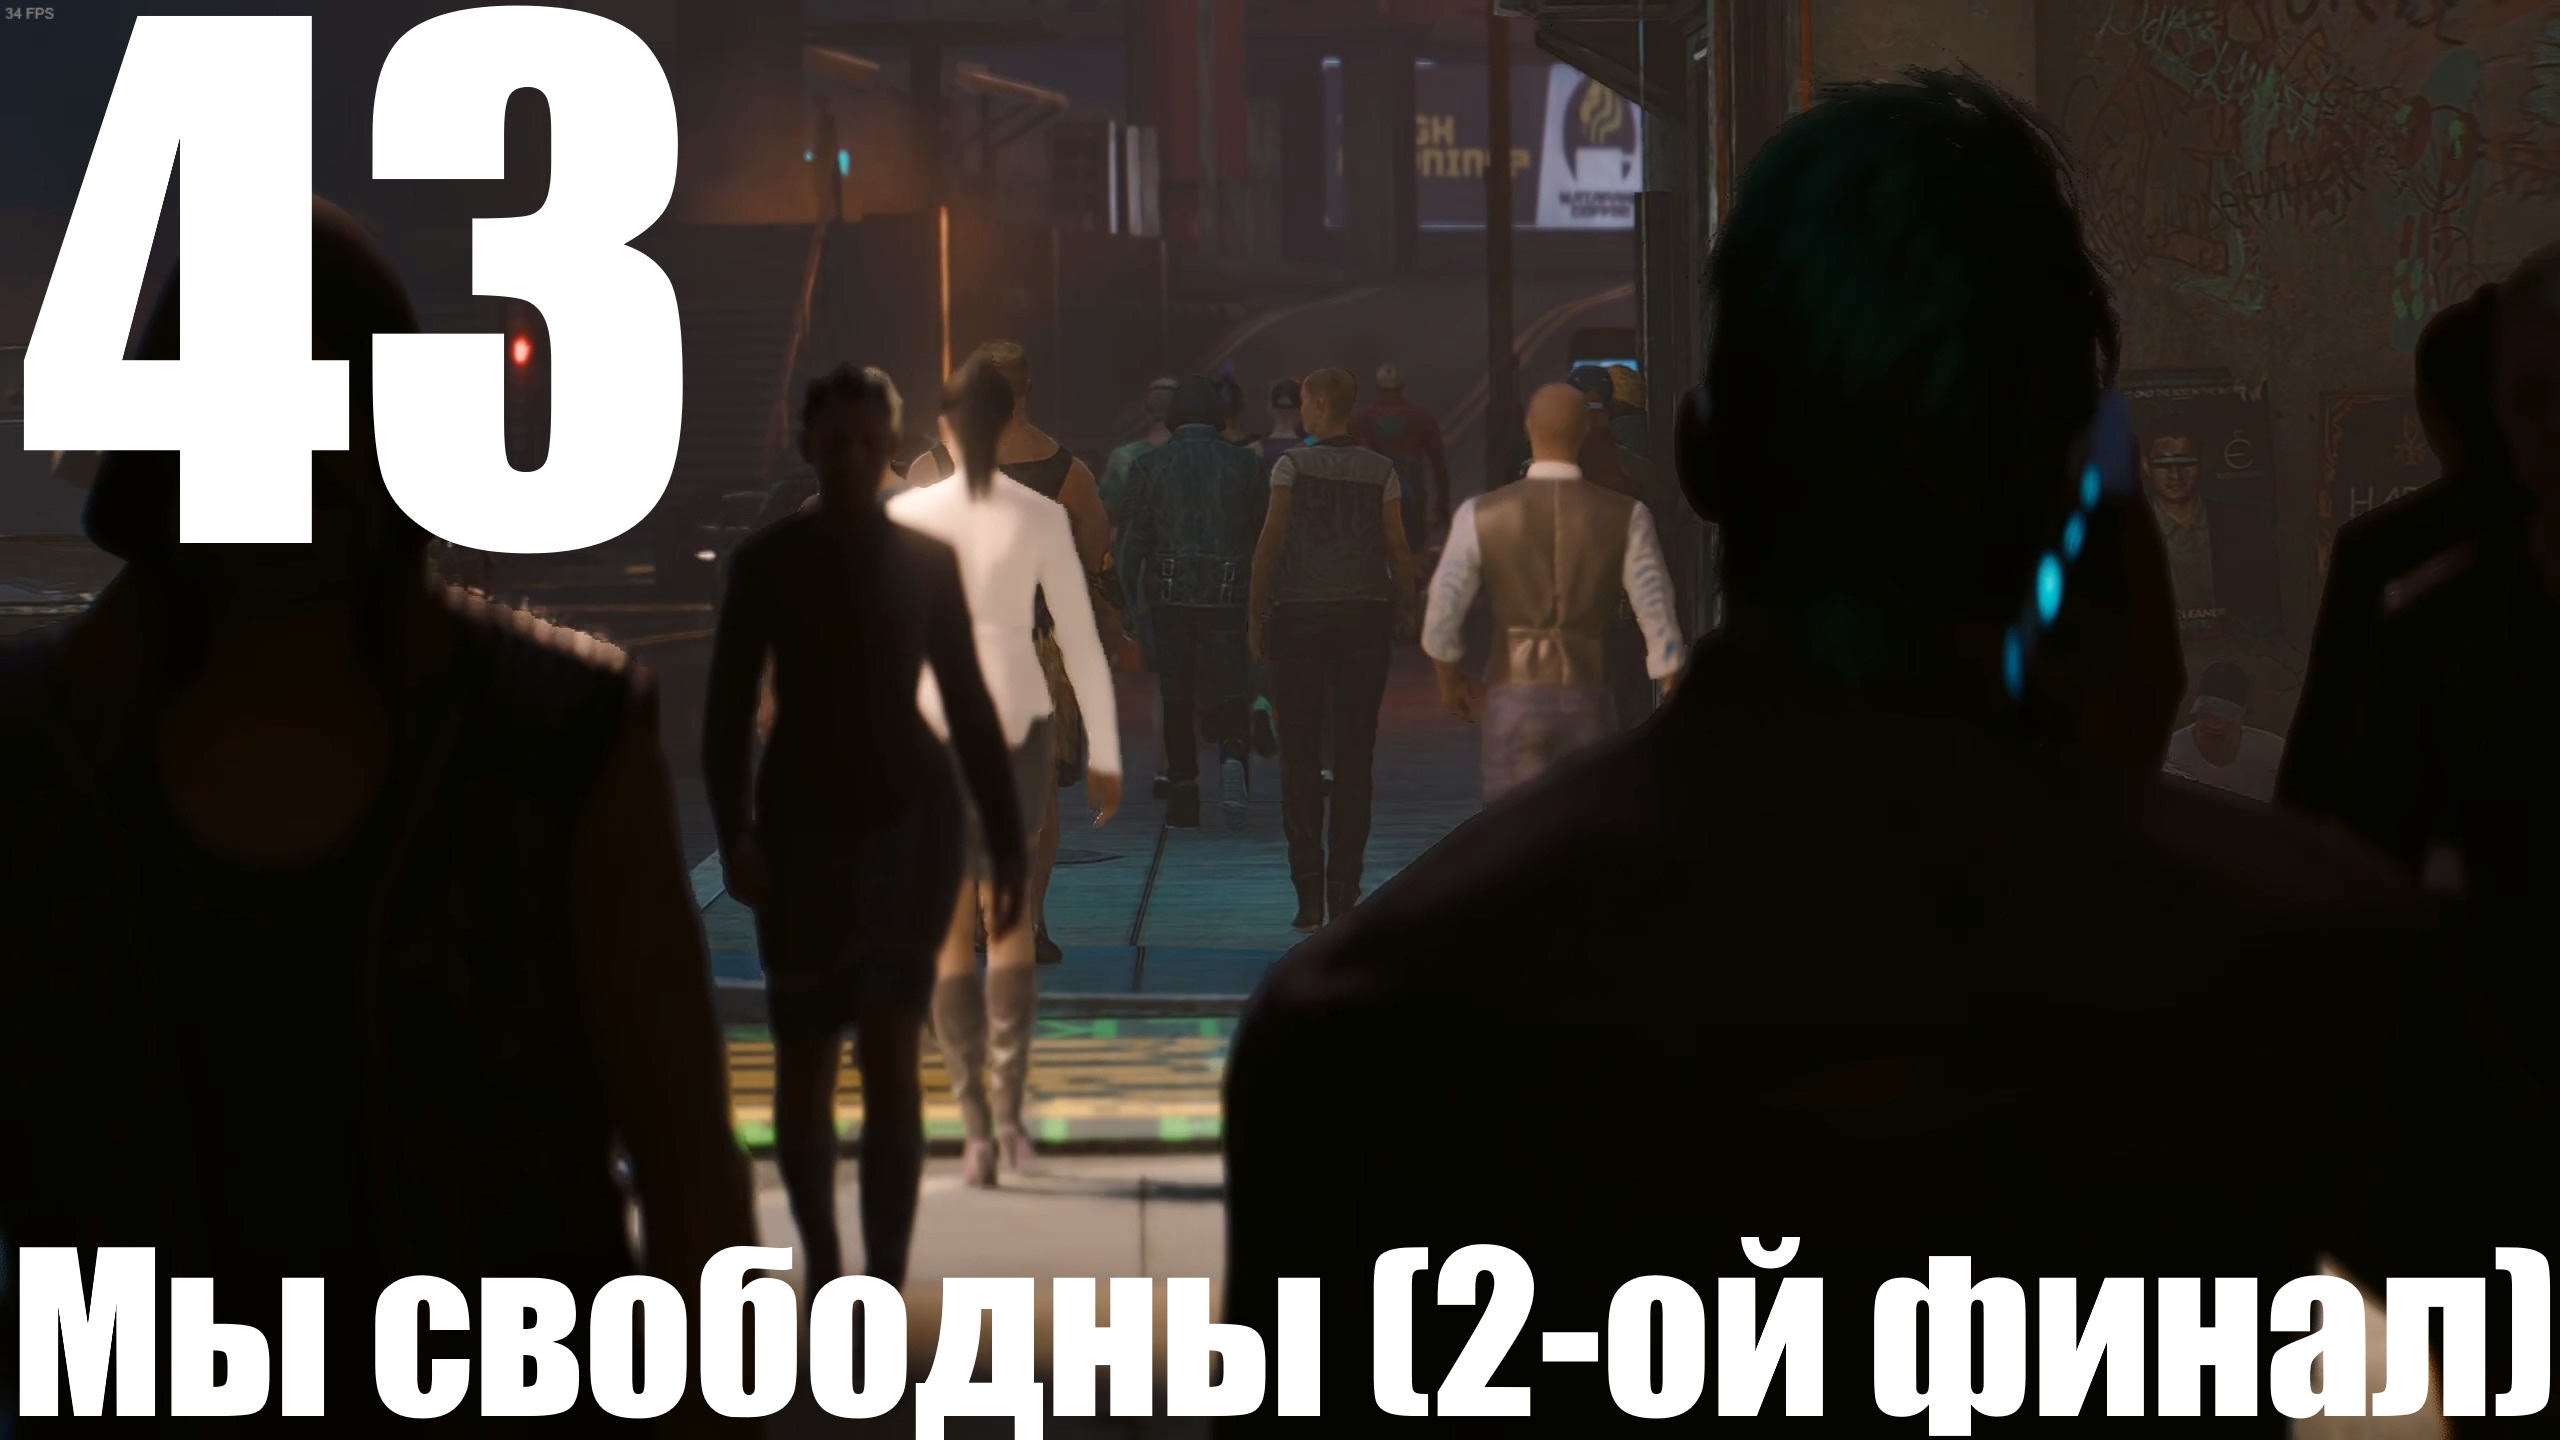 Прохождение игры Cyberpunk 2077 2.0 №43 - Призрачная свобода - Мы свободны (2-ой финал)